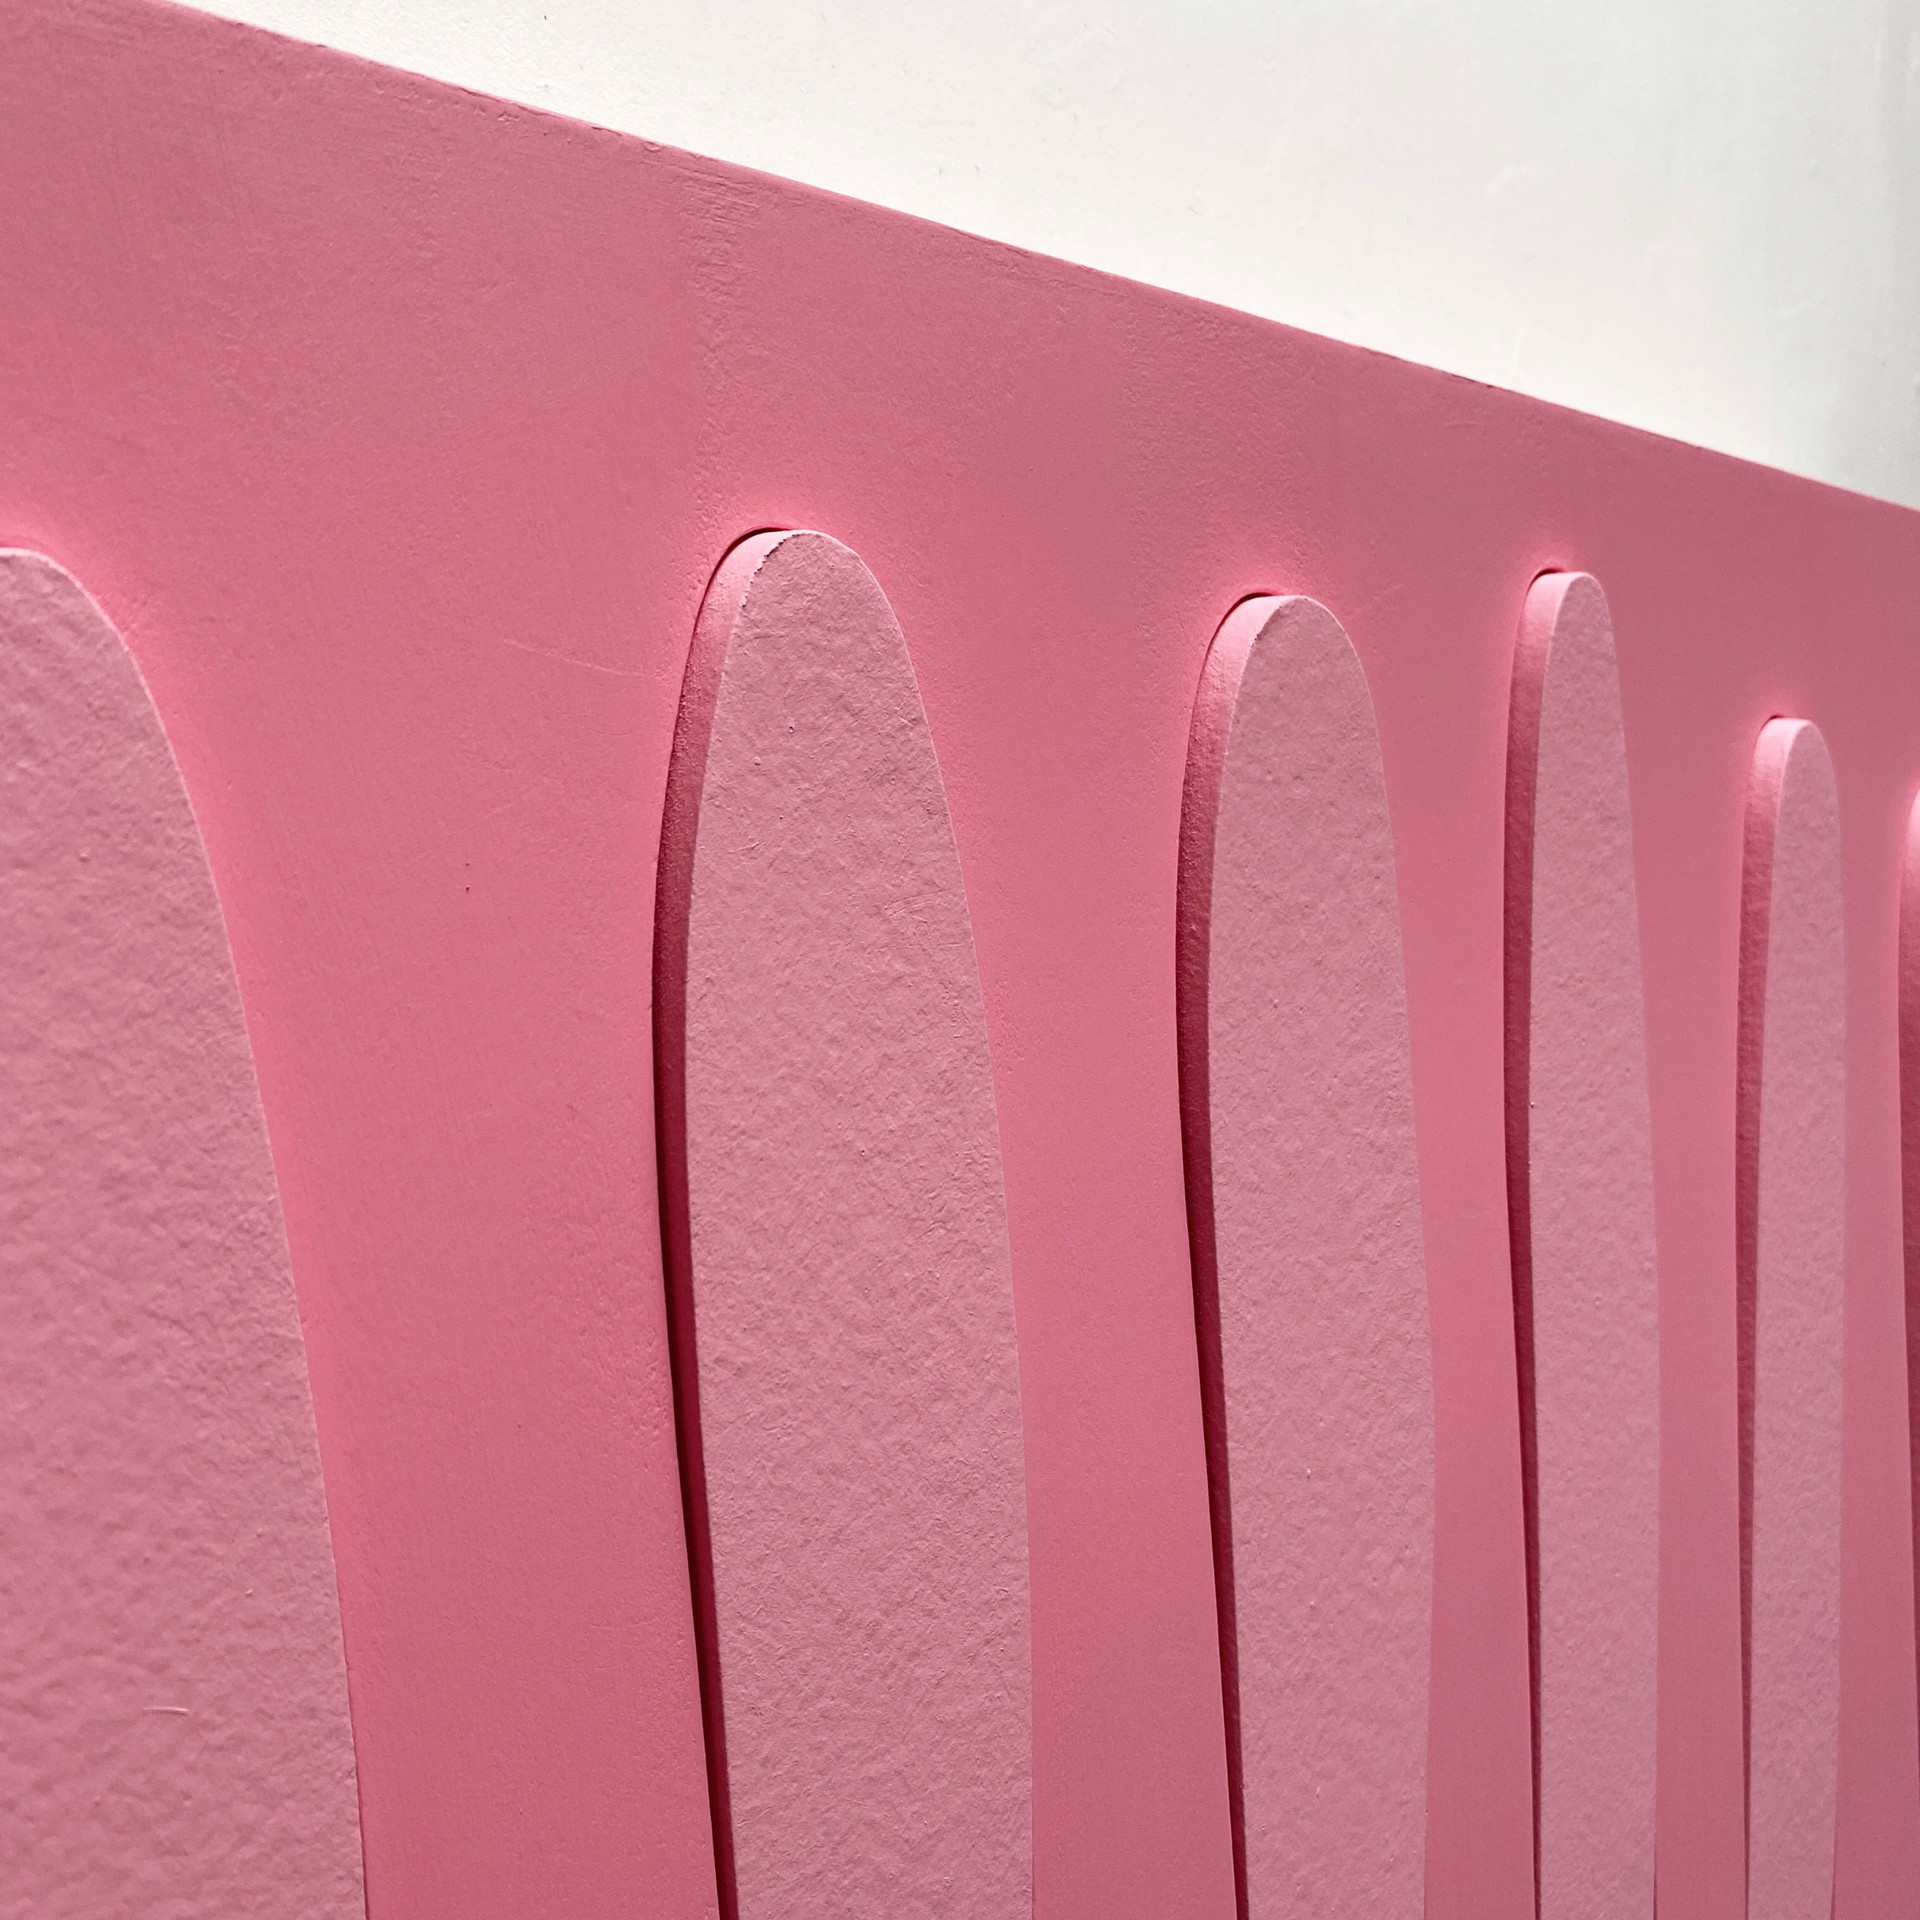 Pink Element 1 by Pascal Piermé